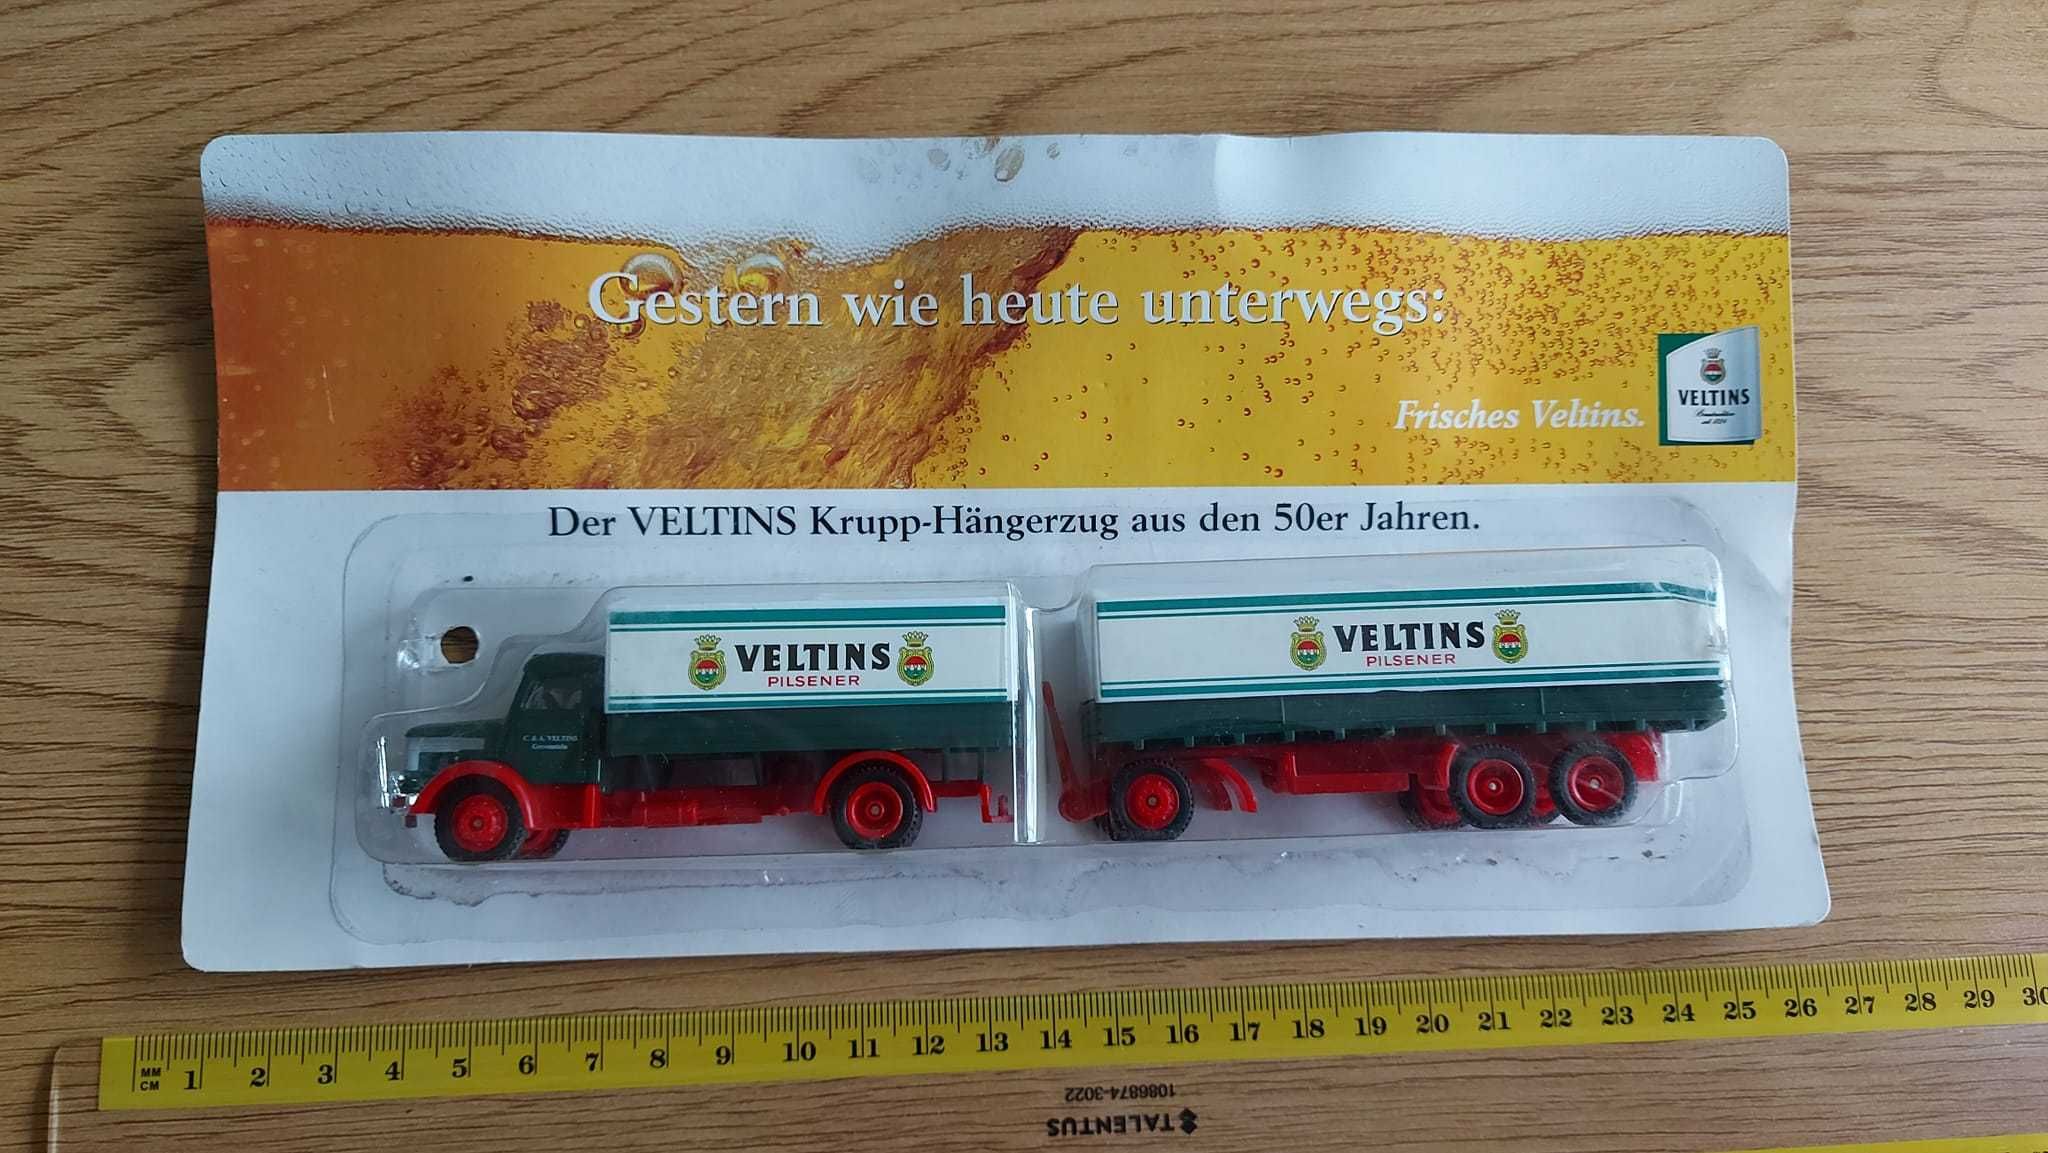 Рекламно камионче Veltins. Цена 12лв. Публикувано и на други места